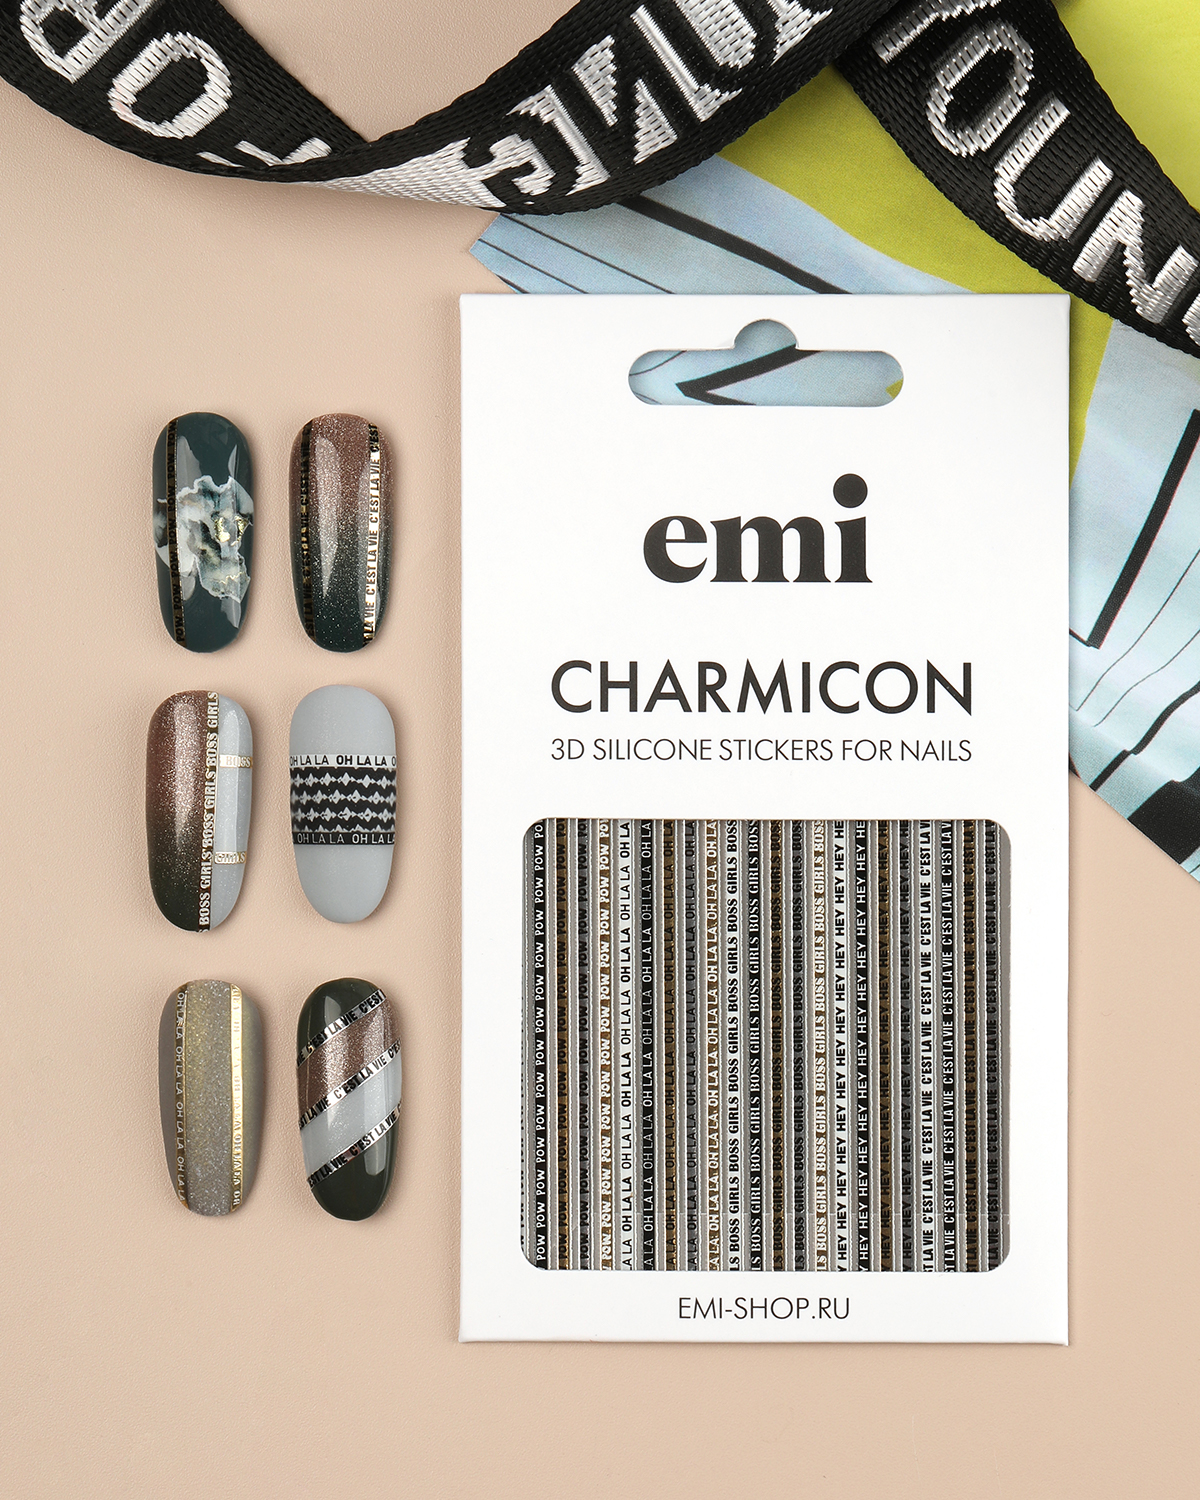 Объемные наклейки для дизайна ногтей EMi Charmicon 3D Silicone Stickers №244 Oh la la